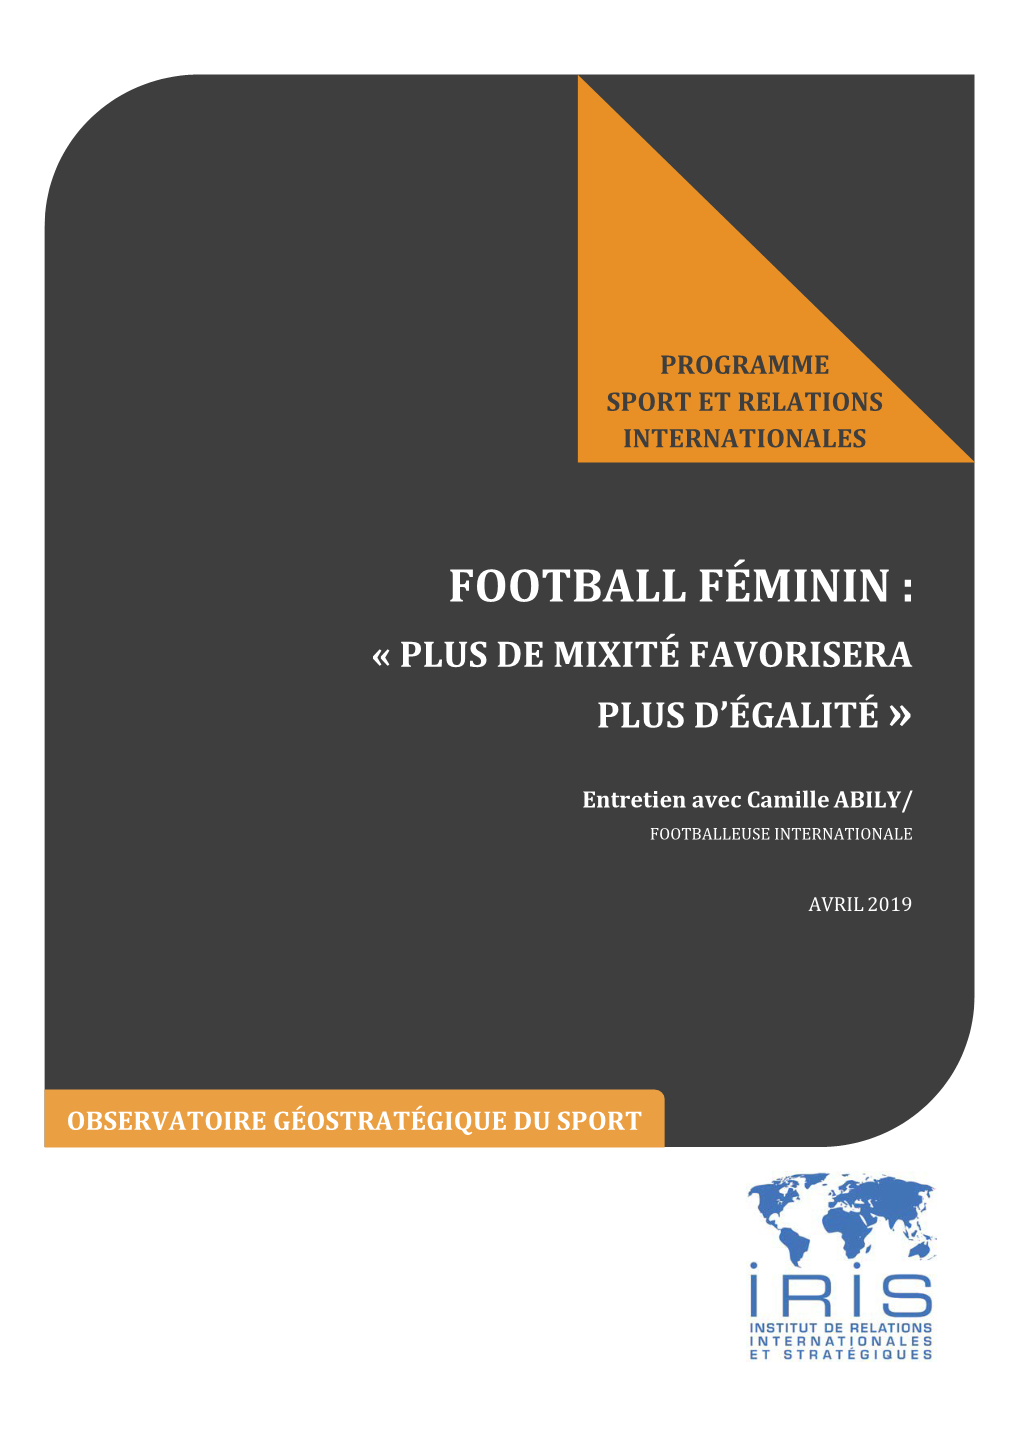 Football Féminin : « Plus De Mixité Favorisera Plus D’Égalité »